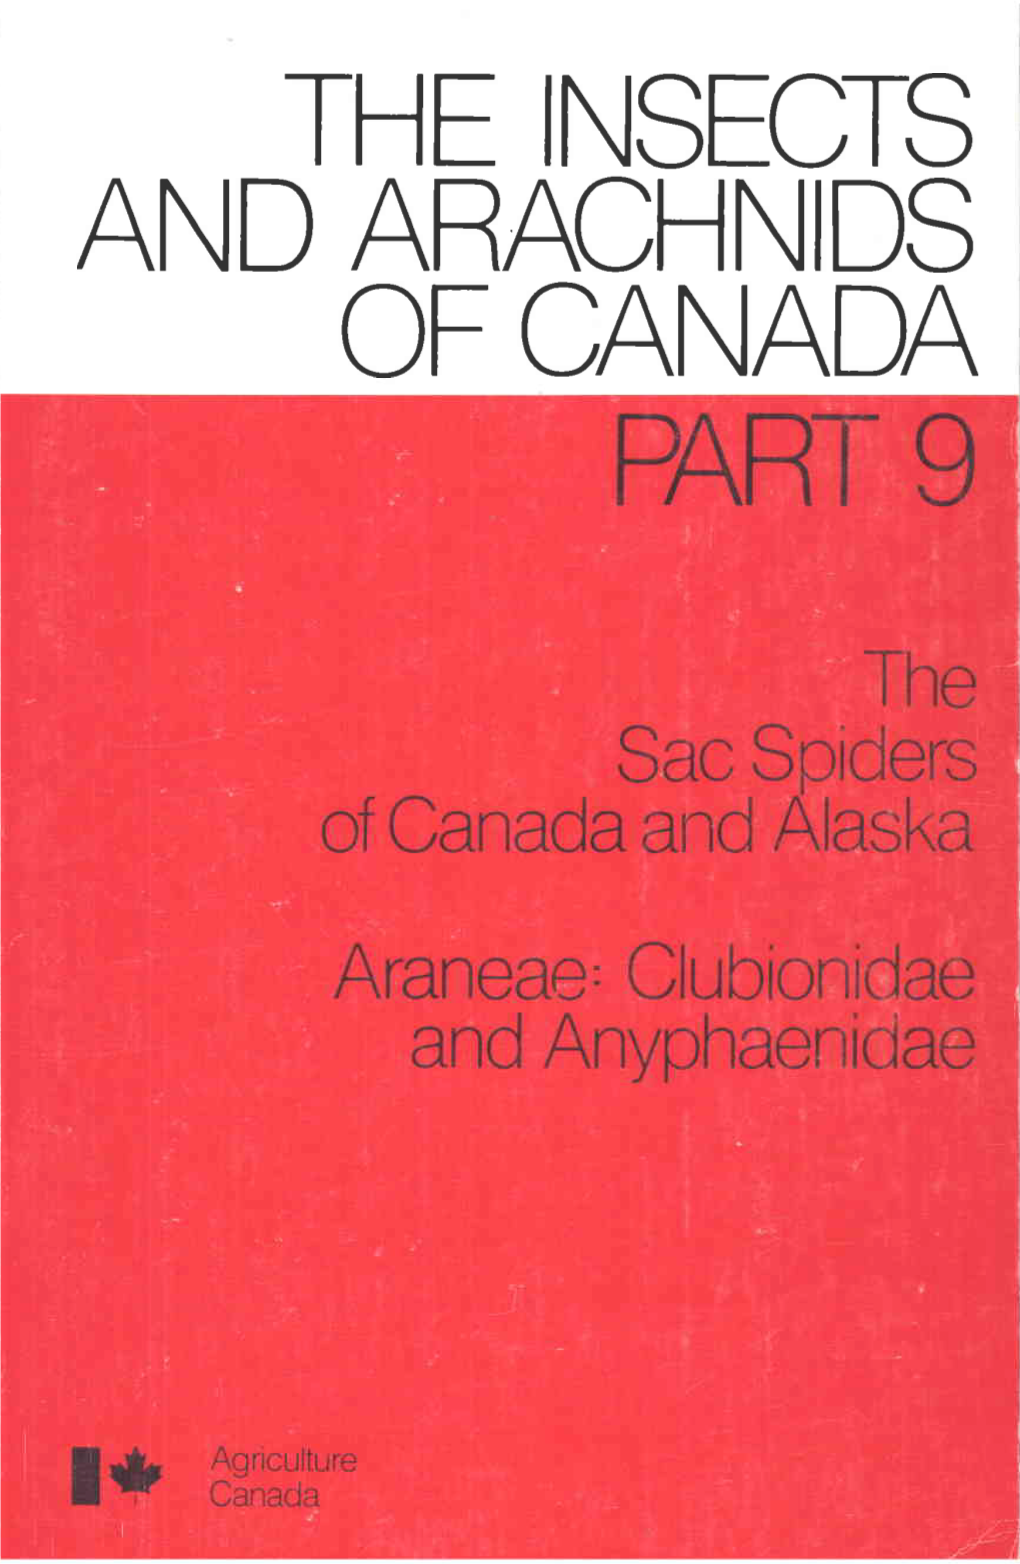 Entomological Society of Canada